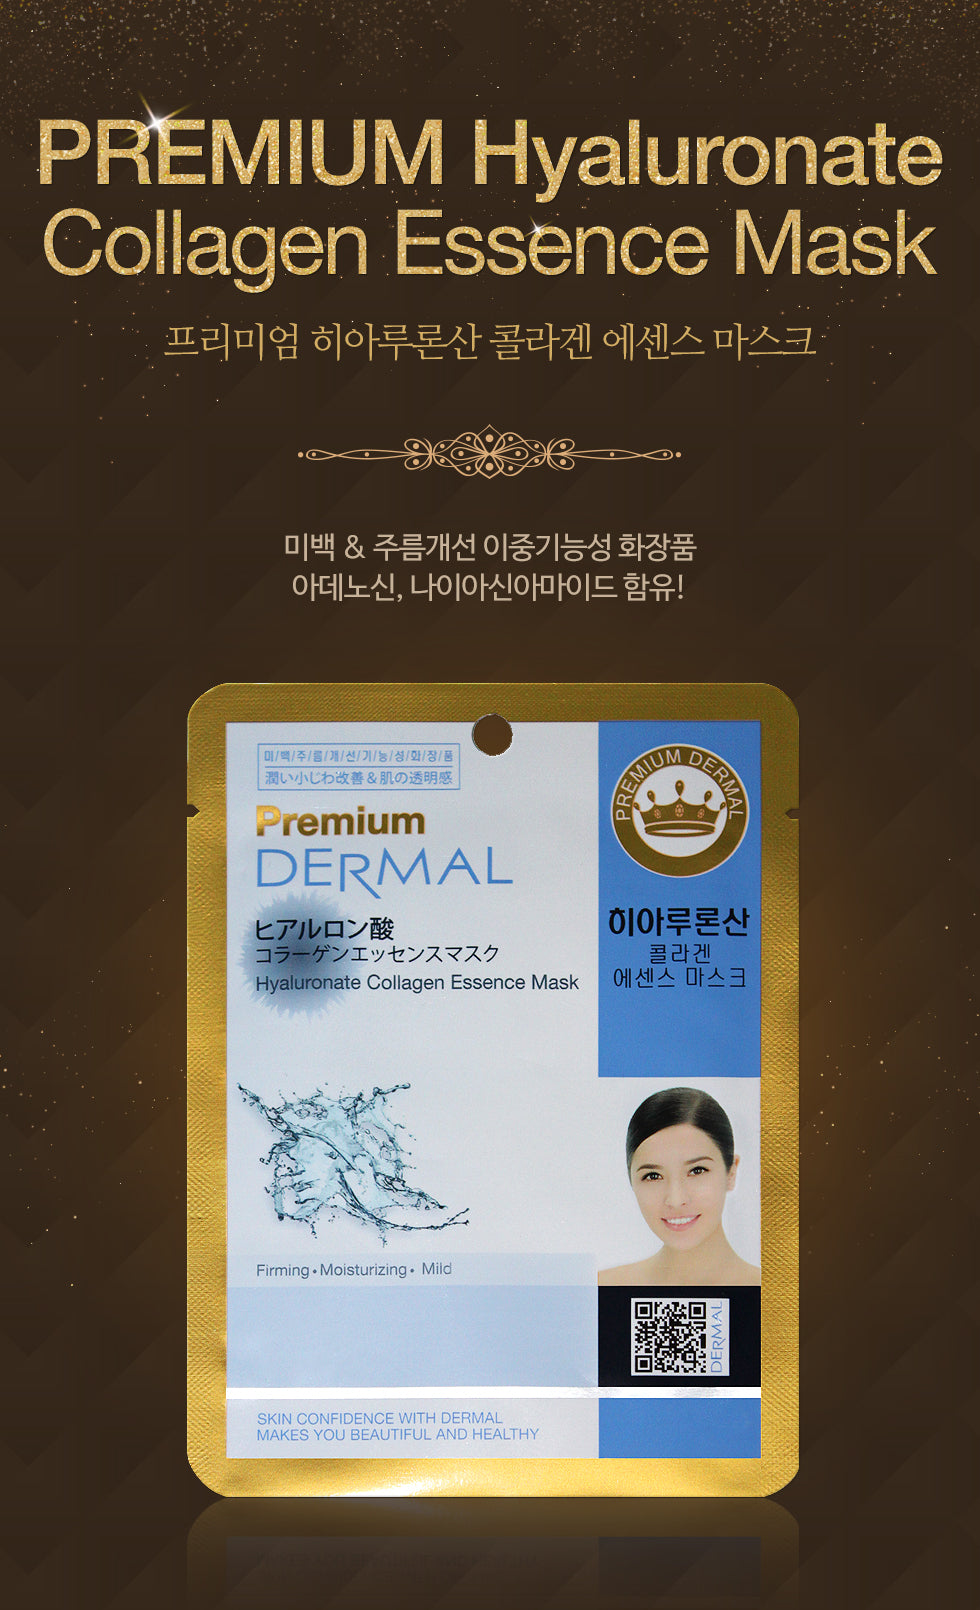 DERMAL Premium Hyaluronate Collagen Essence Mask 10 Pieces